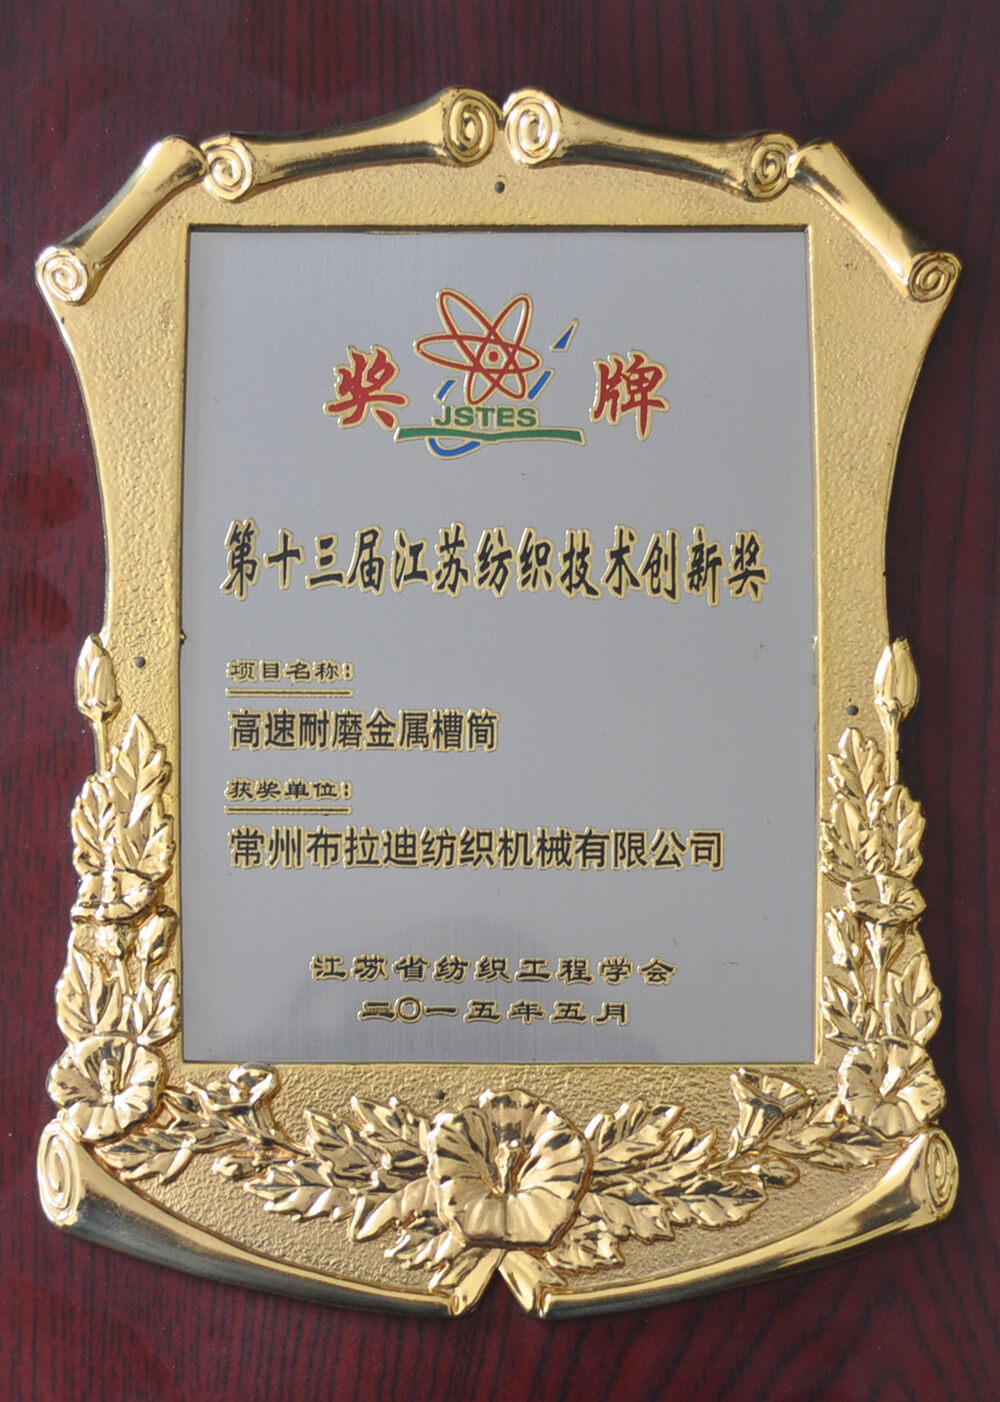 第十三届江苏纺织技术创新奖